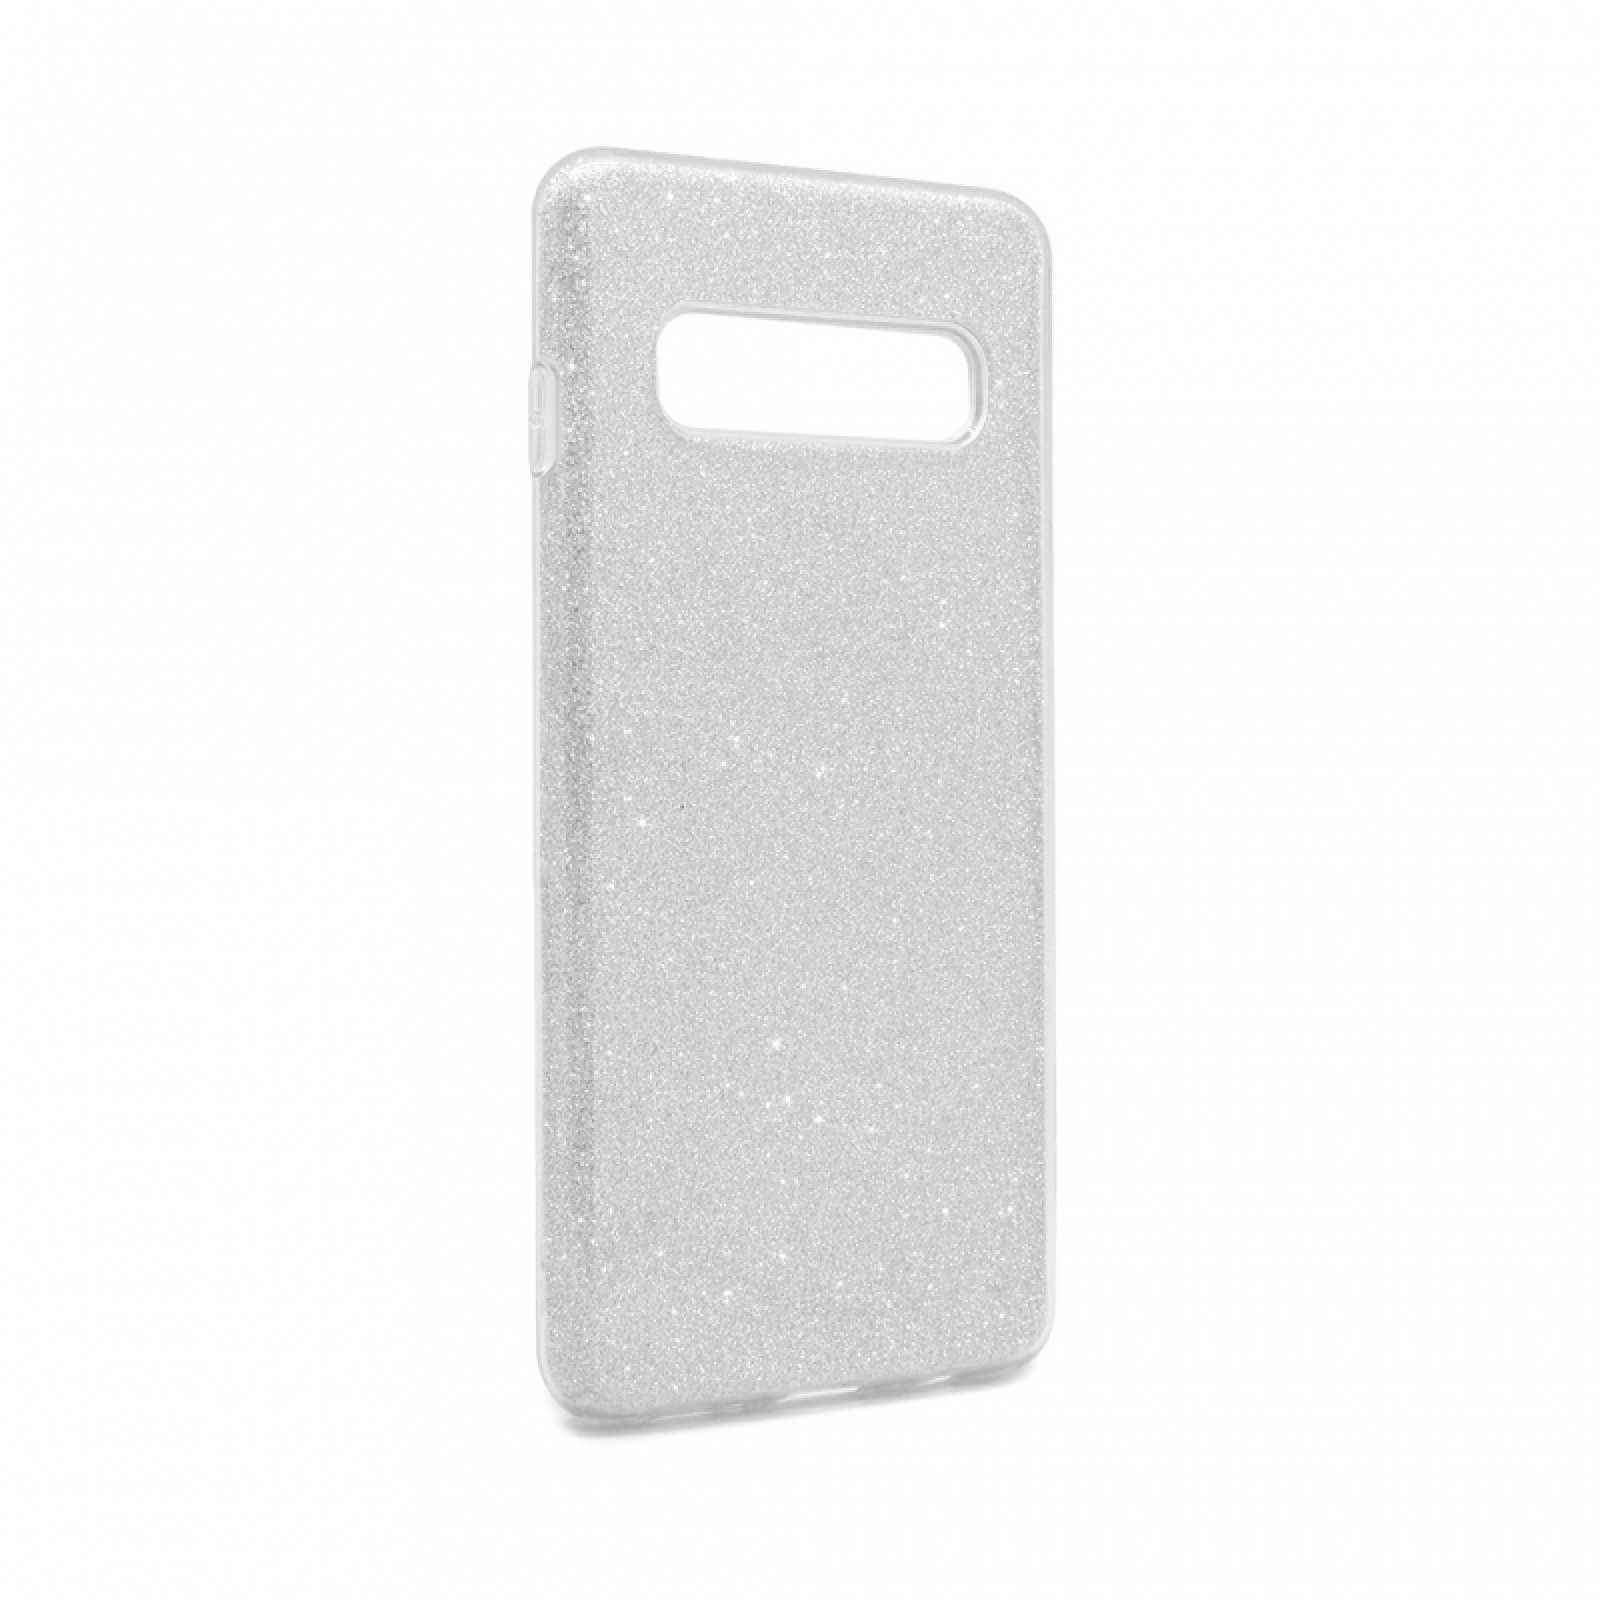 Гръб Teracell Crystal Dust за Samsung G973 S10 - Сребрист